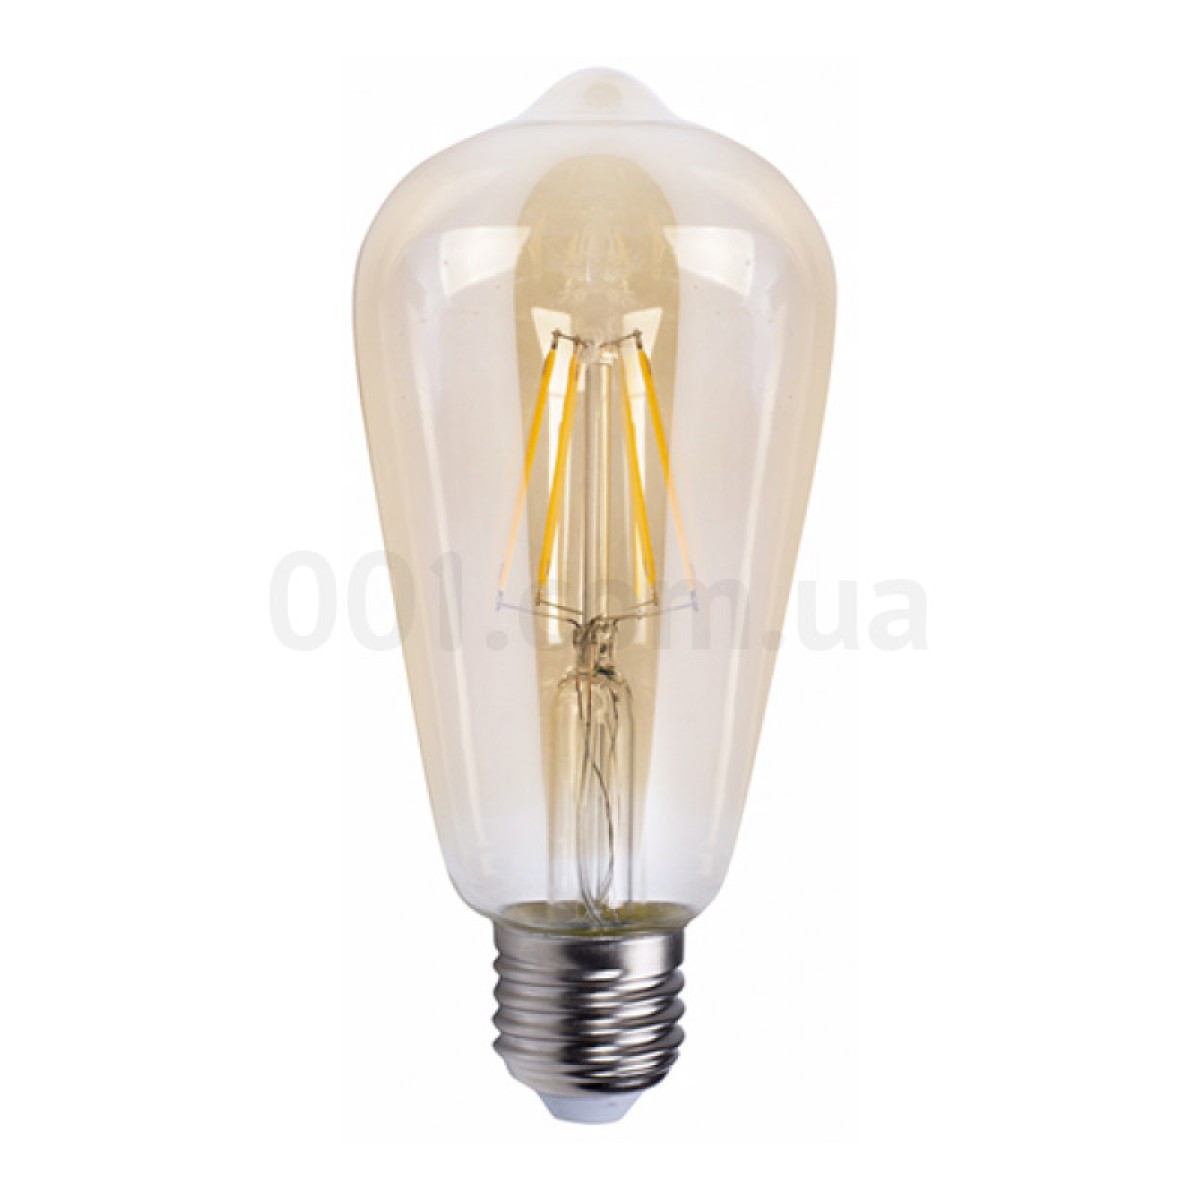 Светодиодная лампа LB-764 ST64 филамент золото 4Вт 2700K E27, Feron 256_256.jpg